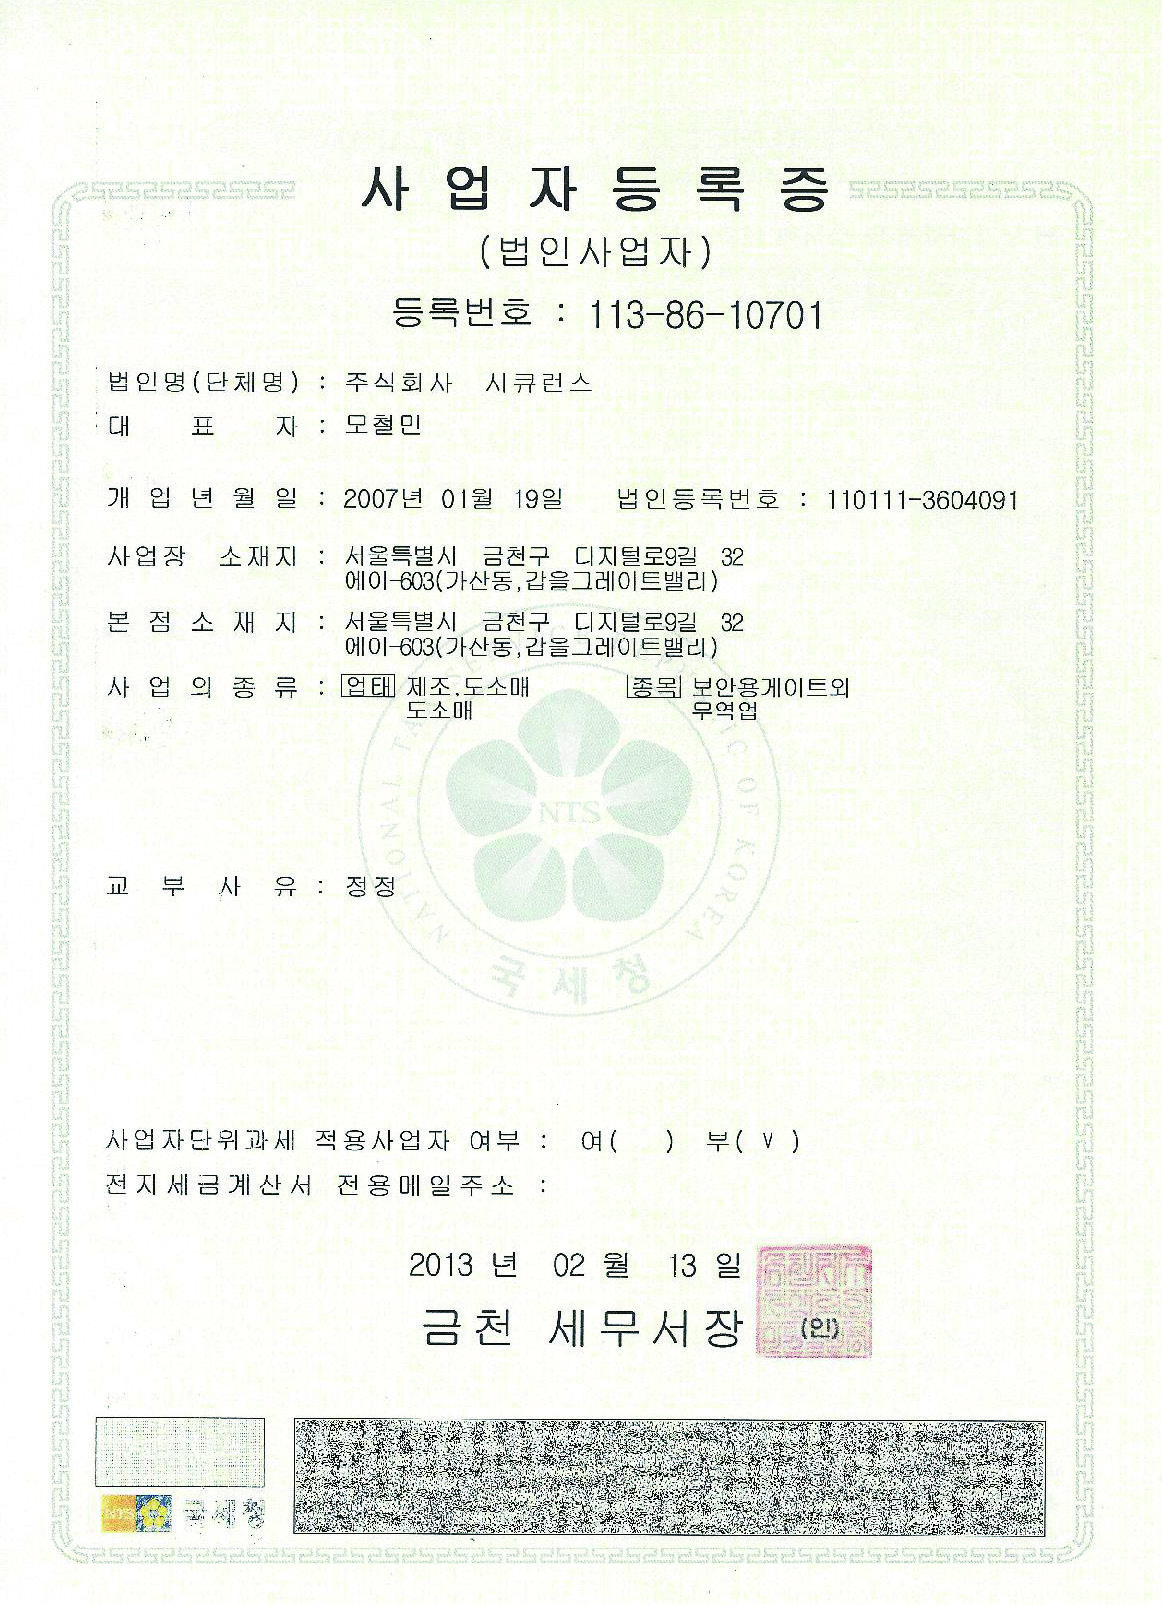 我公司闸机设备的韩国企业登记证